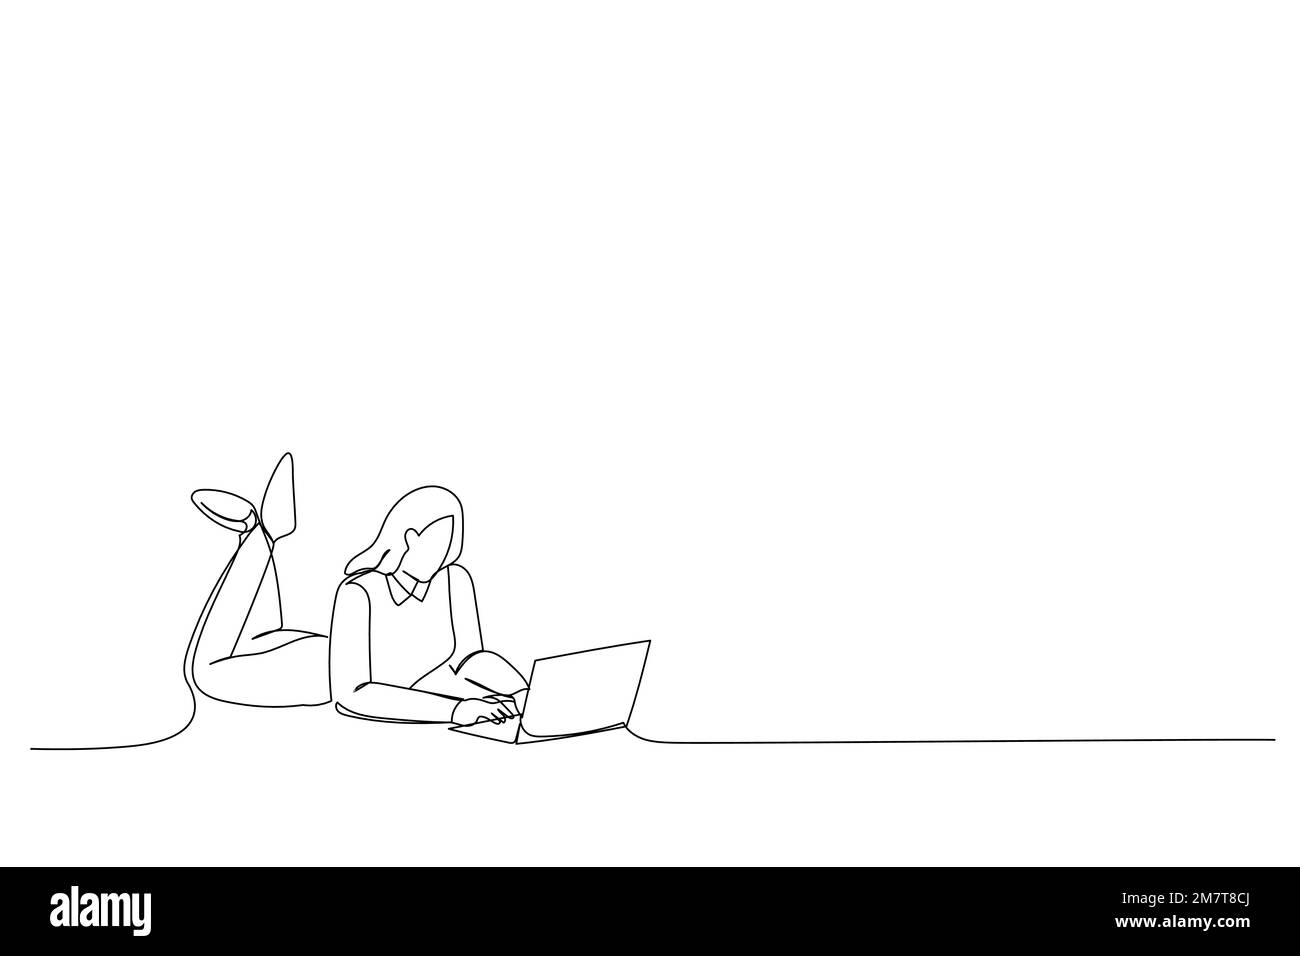 Zeichnen von Frauen Liegen-Arbeitsplatz-Laptop unglaubliche Blogging-Benachrichtigung Single Line Art Stock Vektor